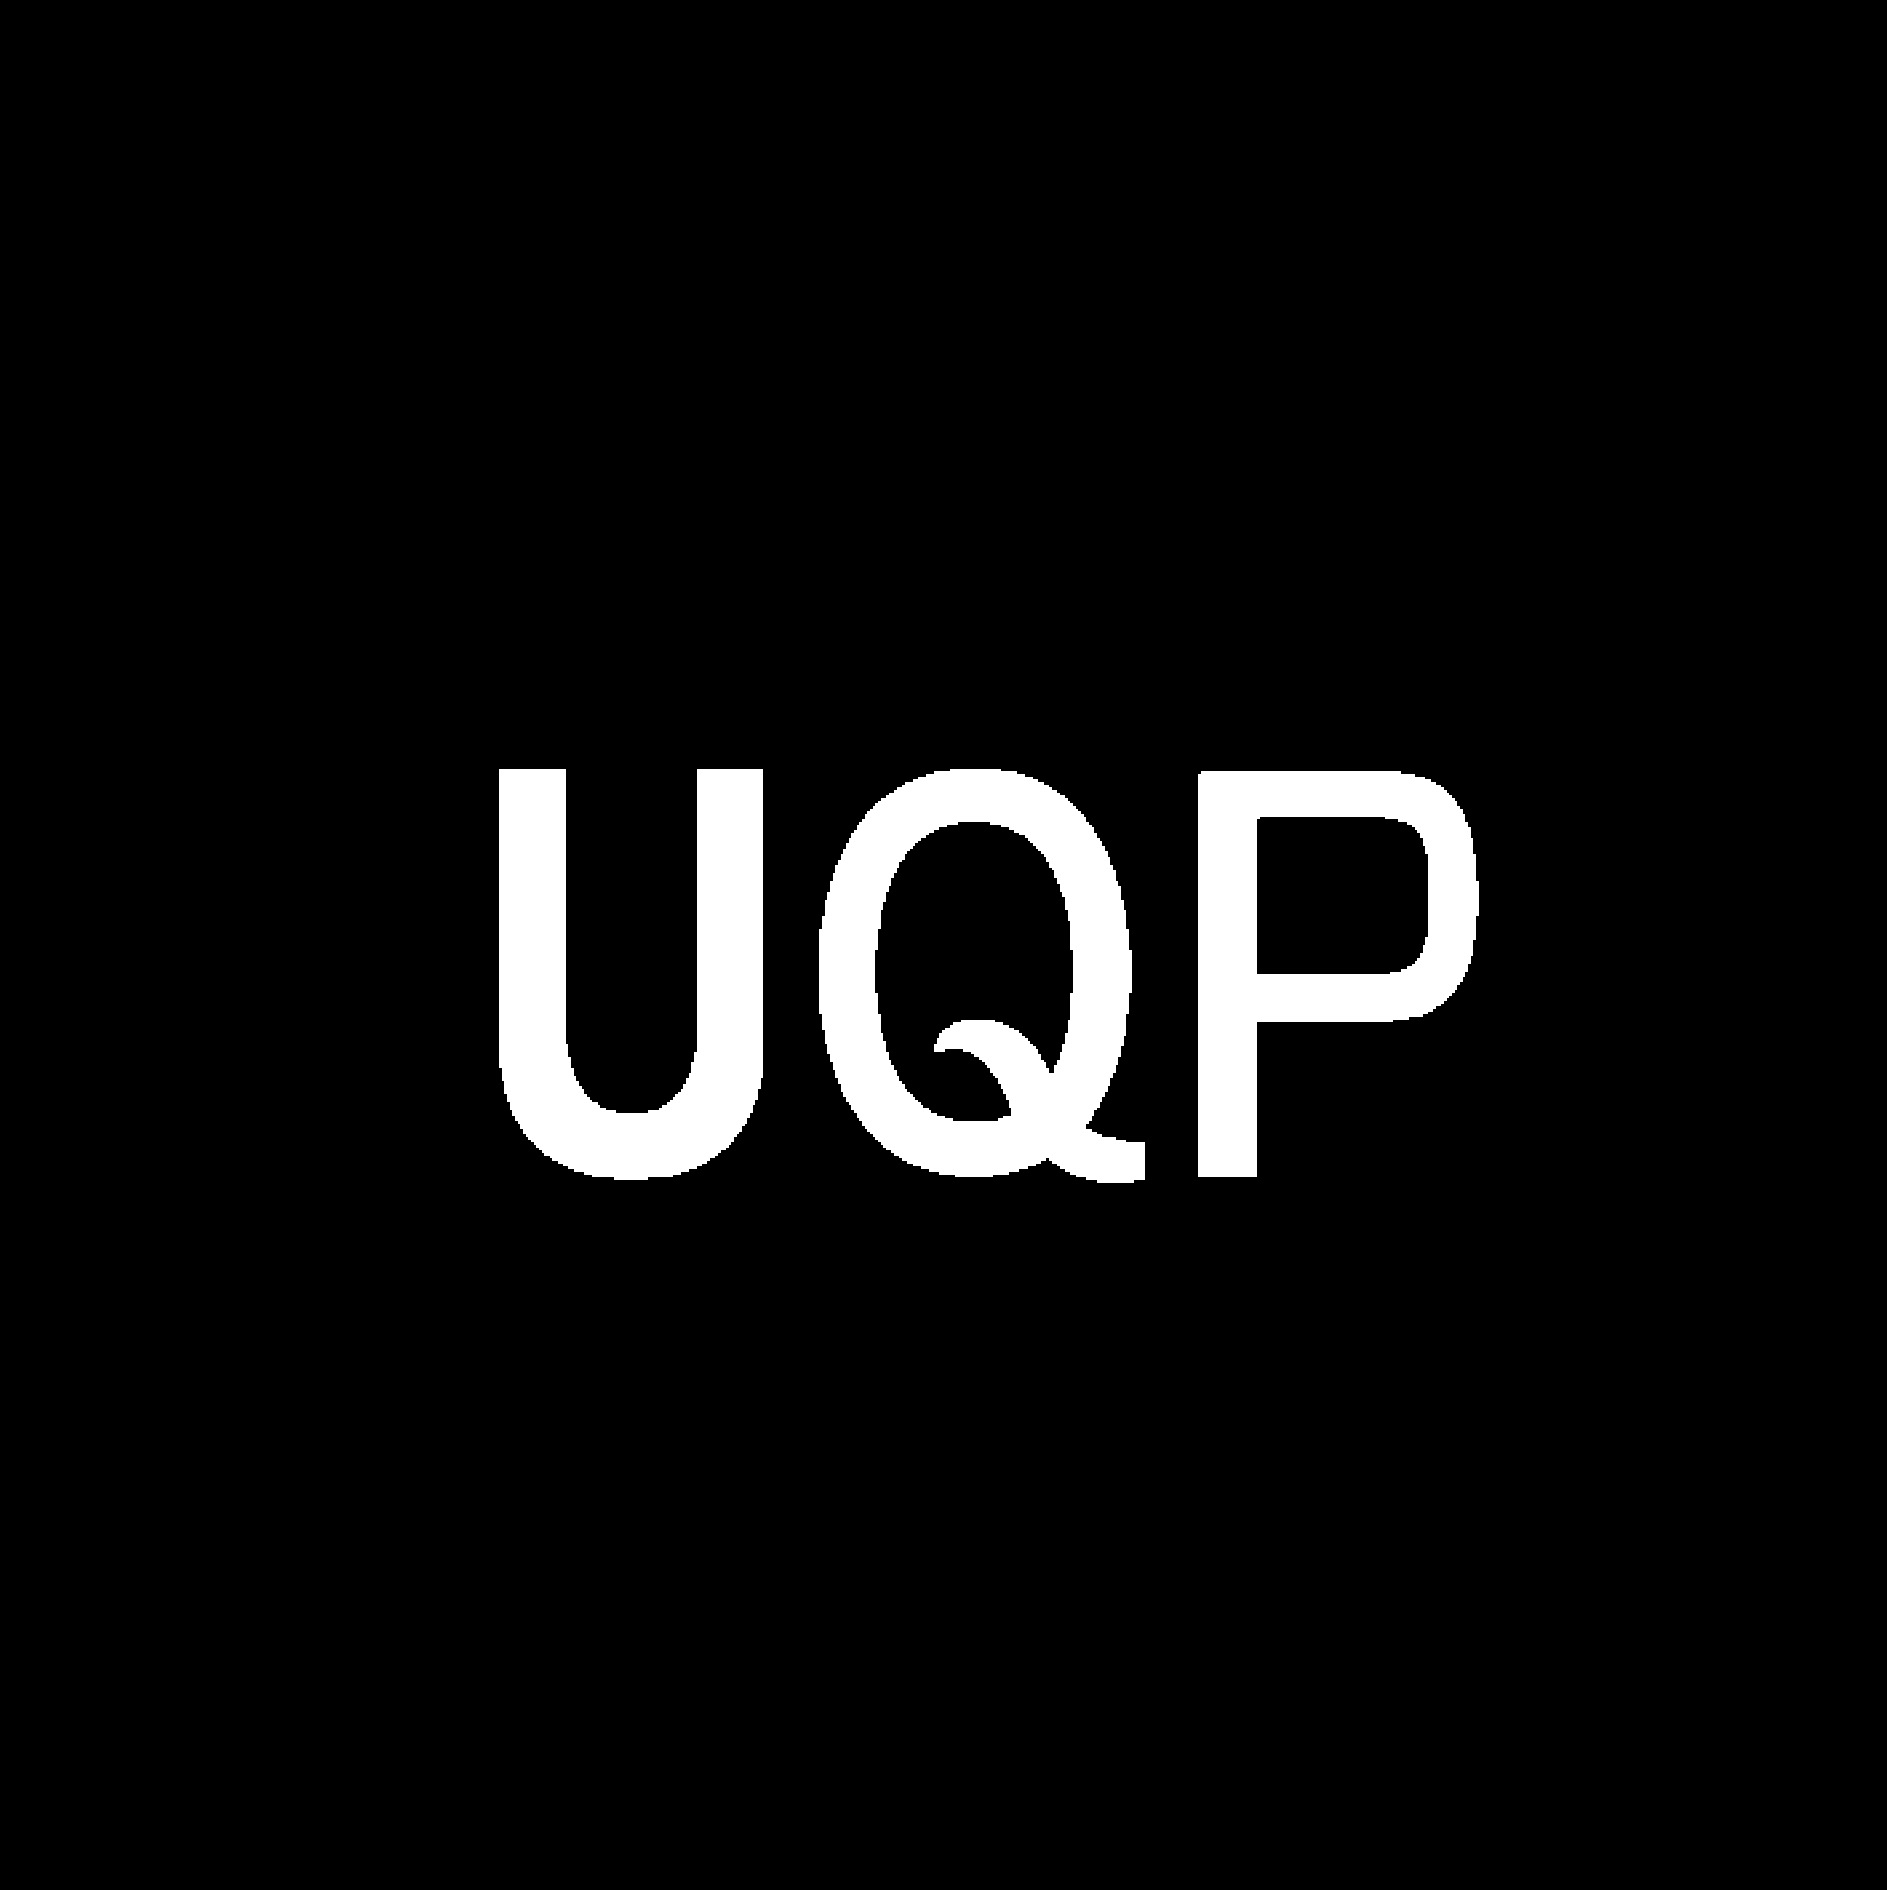 UQP logo